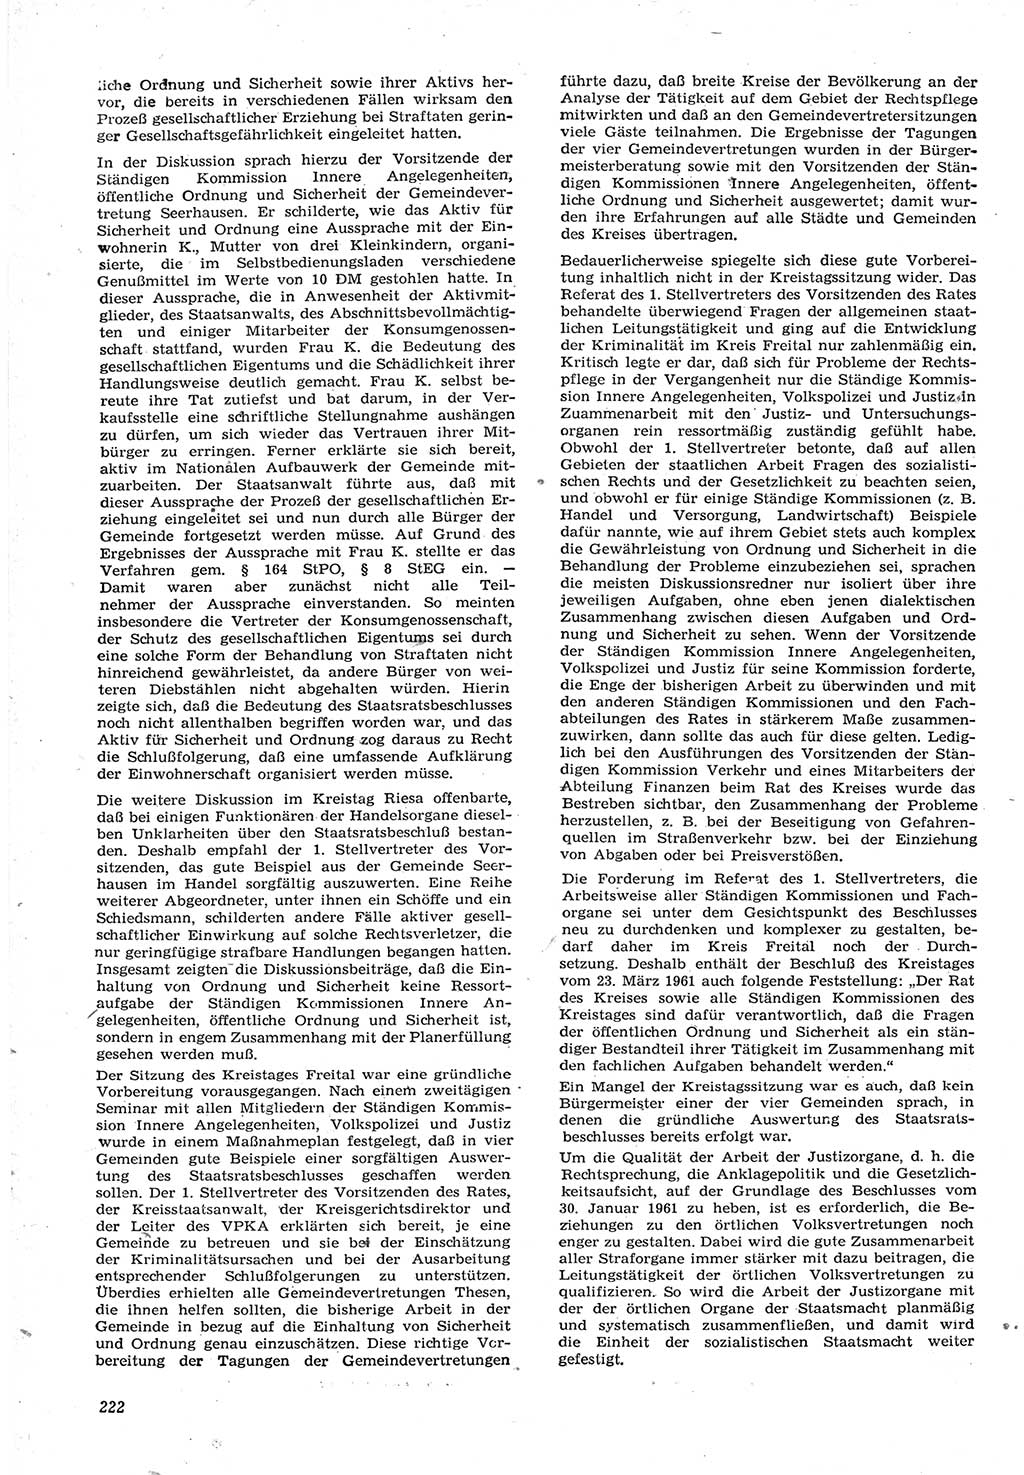 Neue Justiz (NJ), Zeitschrift für Recht und Rechtswissenschaft [Deutsche Demokratische Republik (DDR)], 15. Jahrgang 1961, Seite 222 (NJ DDR 1961, S. 222)